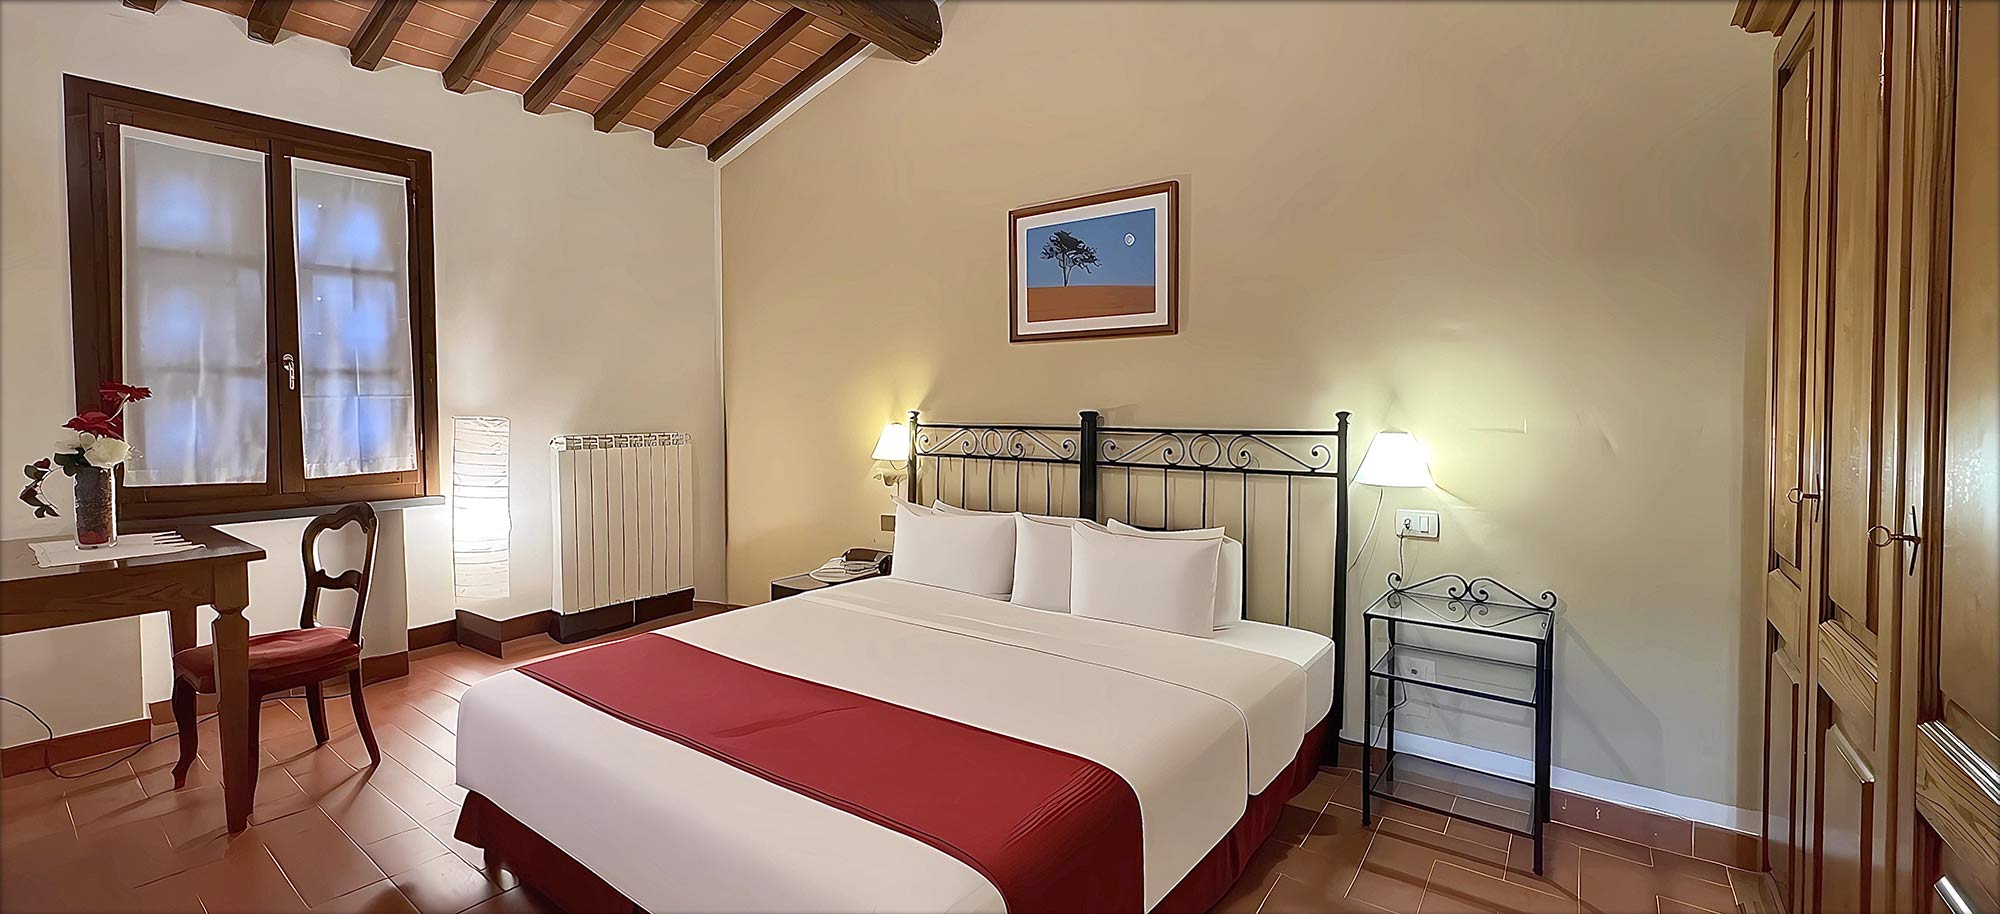 Corte Tommasi - Residence turistico - 207 - Appartamento per vacanze con piscina in Toscana